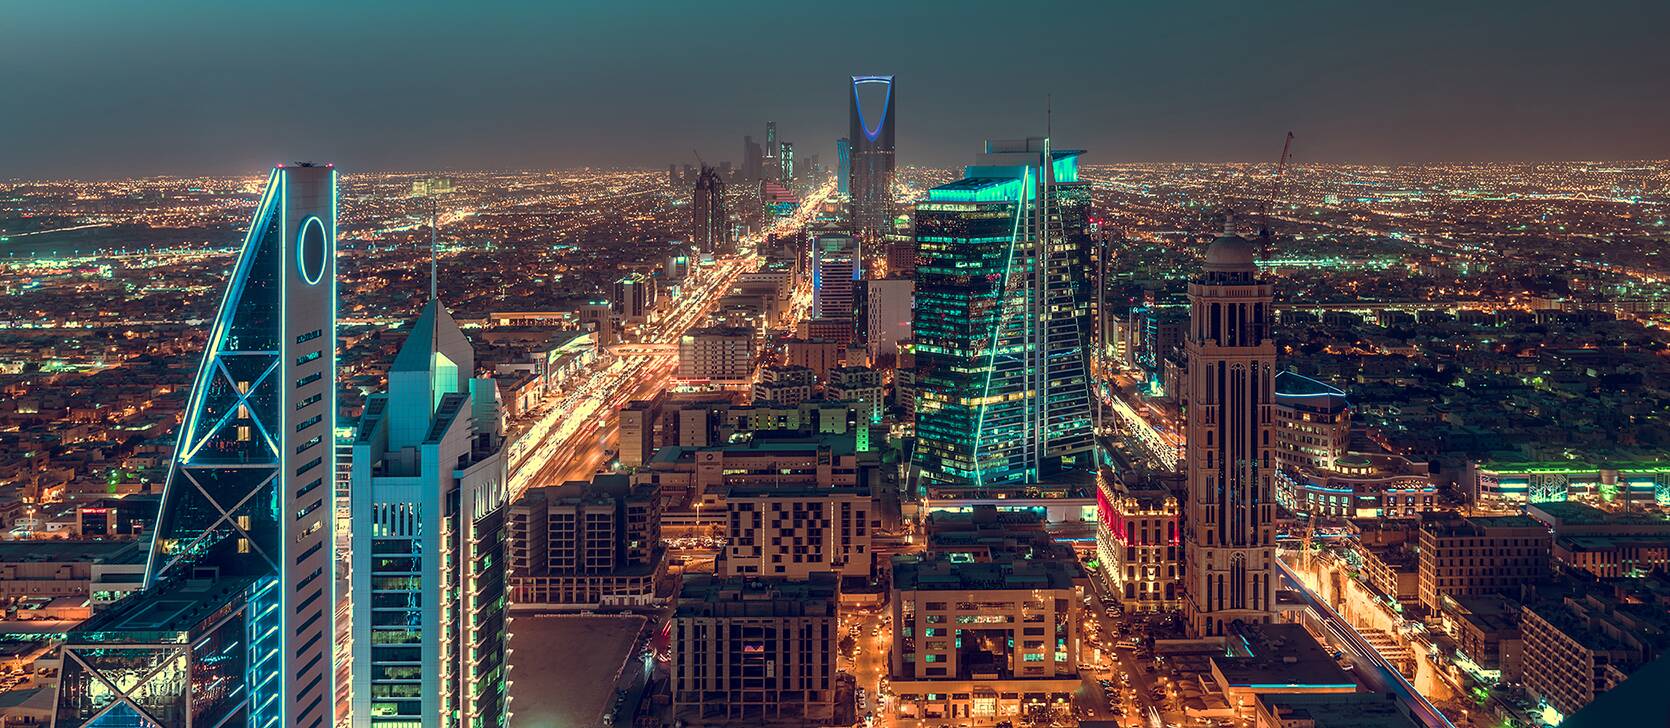 أفضل الفنادق في الرياض 2021